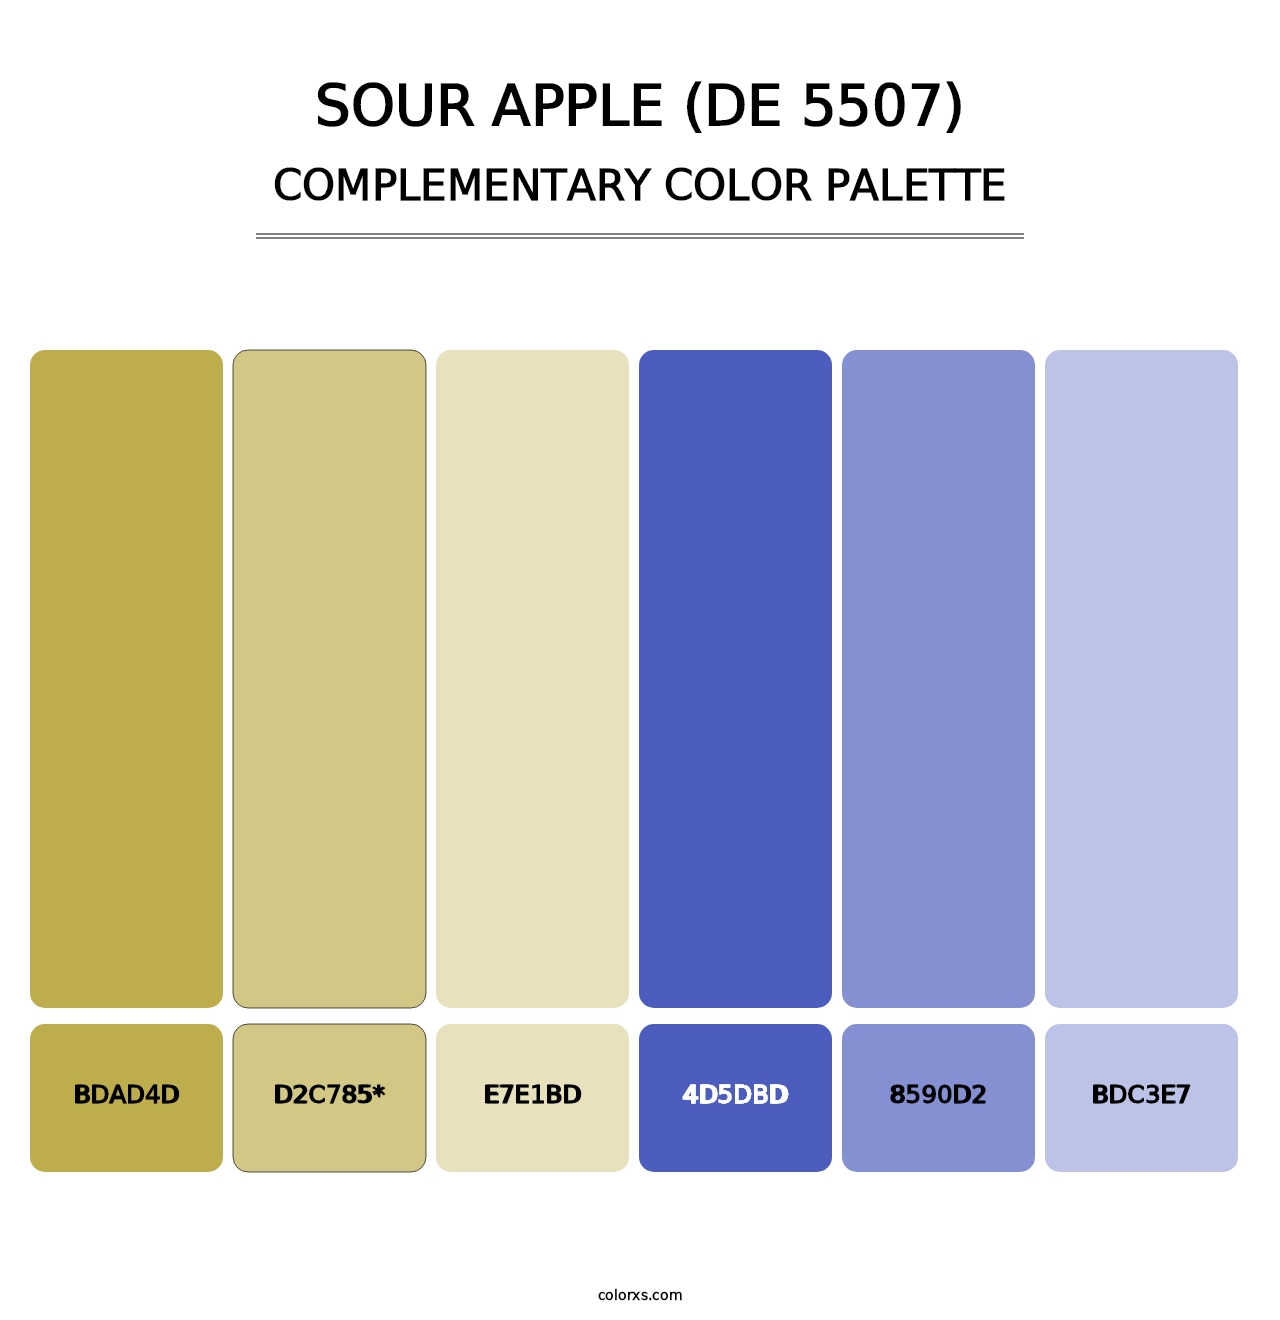 Sour Apple (DE 5507) - Complementary Color Palette